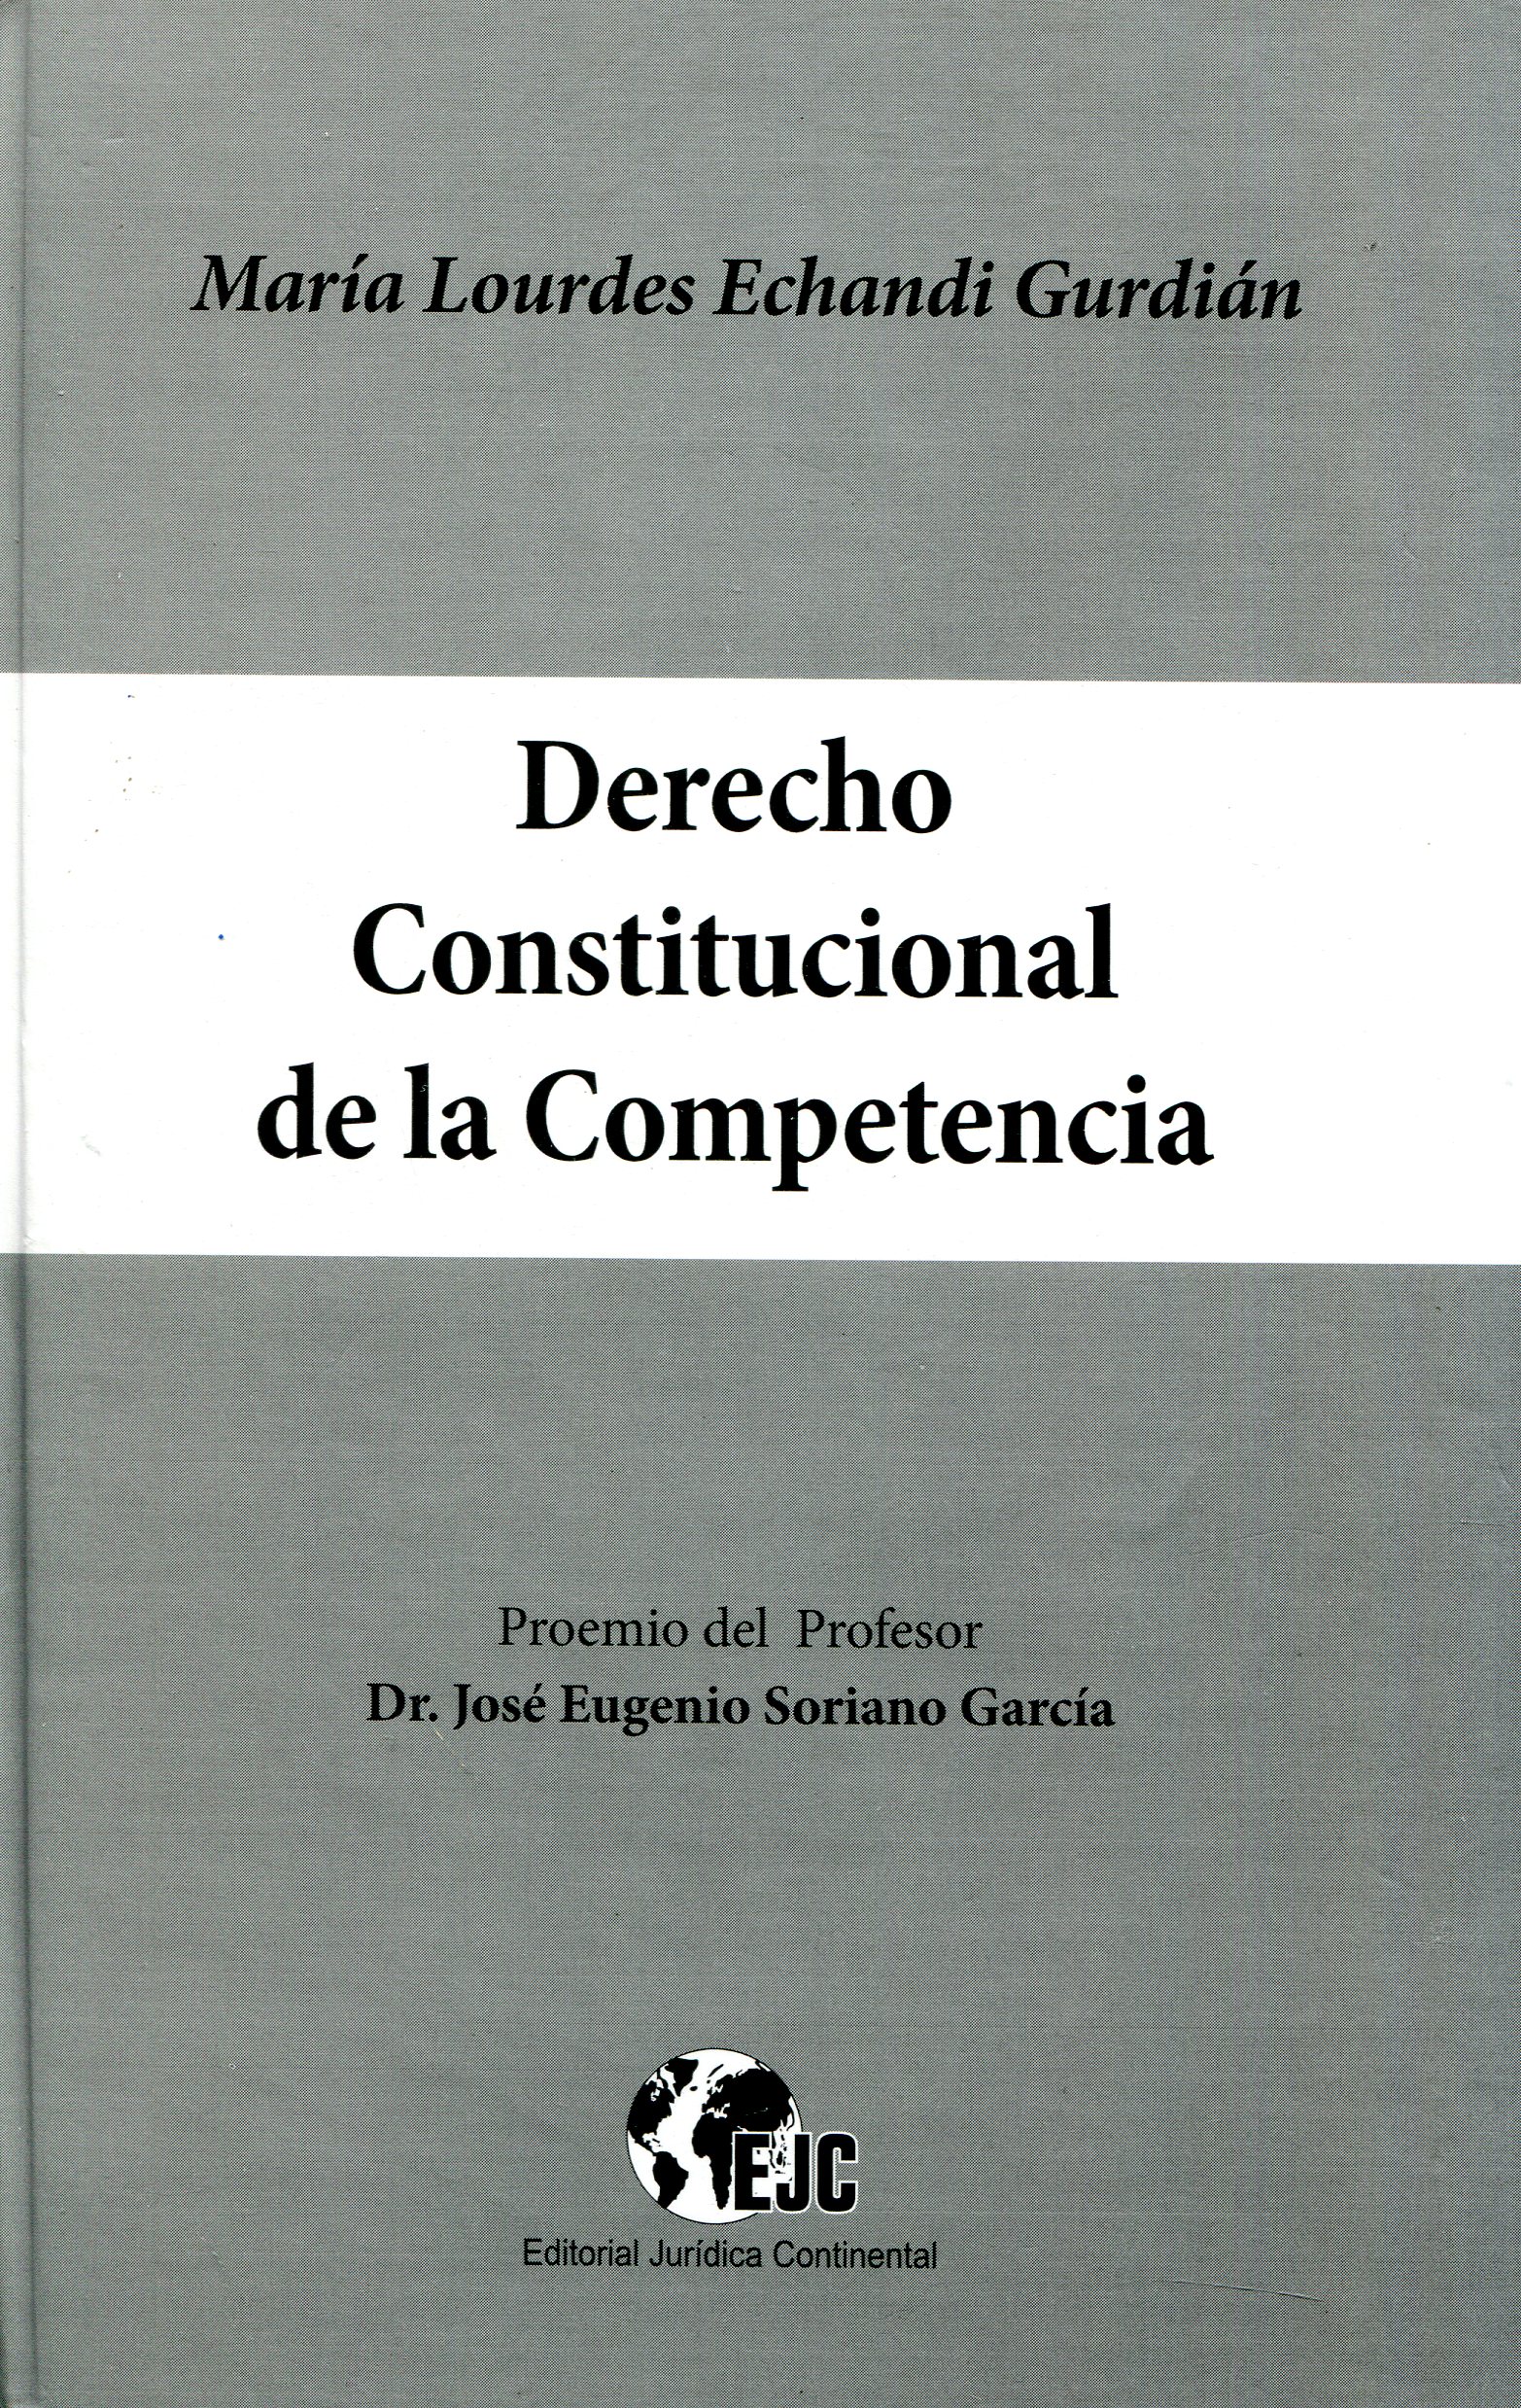 Derecho Constitucional de la Competencia